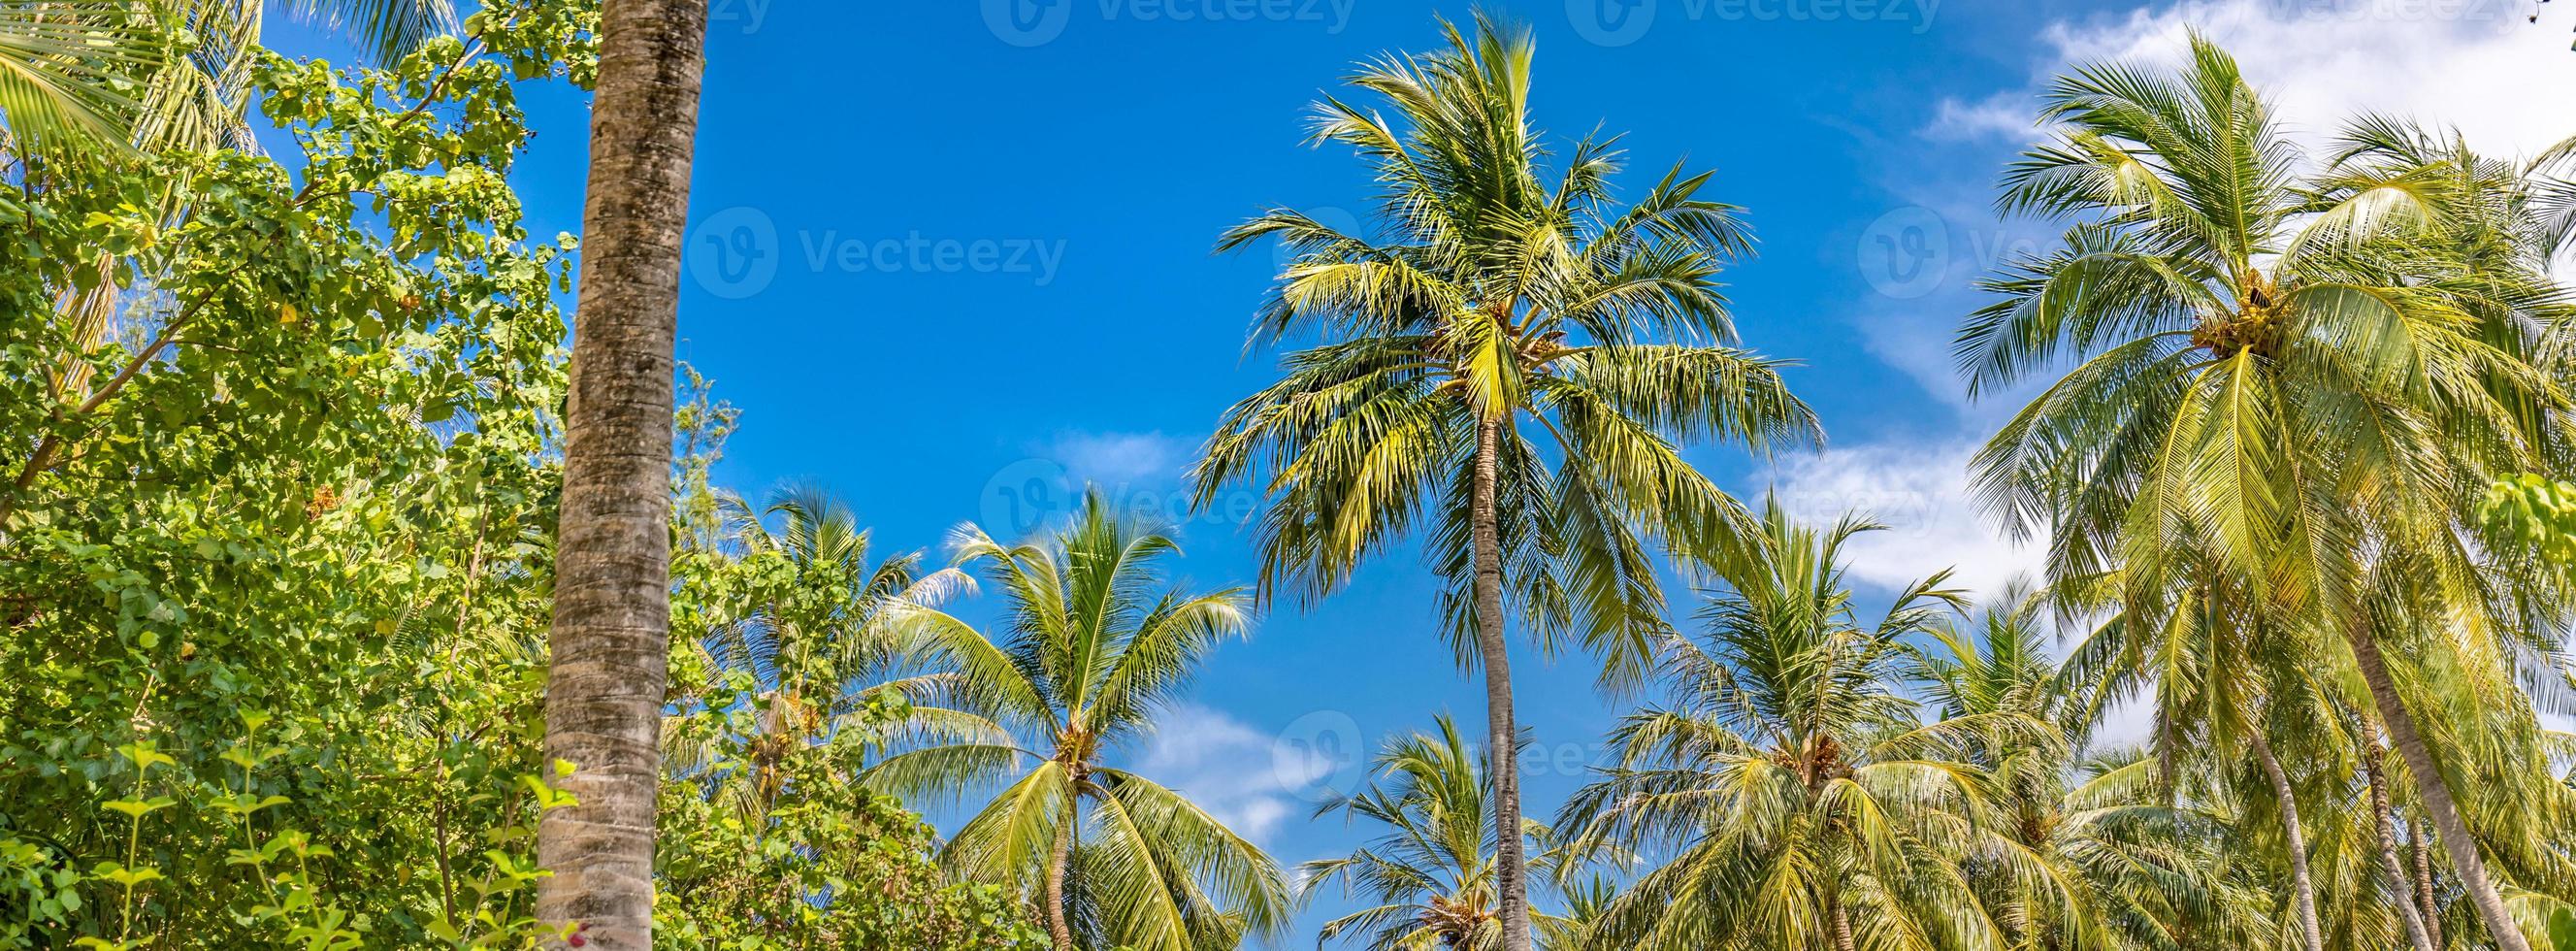 palm bomen tegen blauw lucht, palm bomen Bij tropisch kust, gestileerd, kokosnoot boom, zomer boom. boost omhoog kleuren werkwijze. mooi tropisch natuur banier sjabloon foto